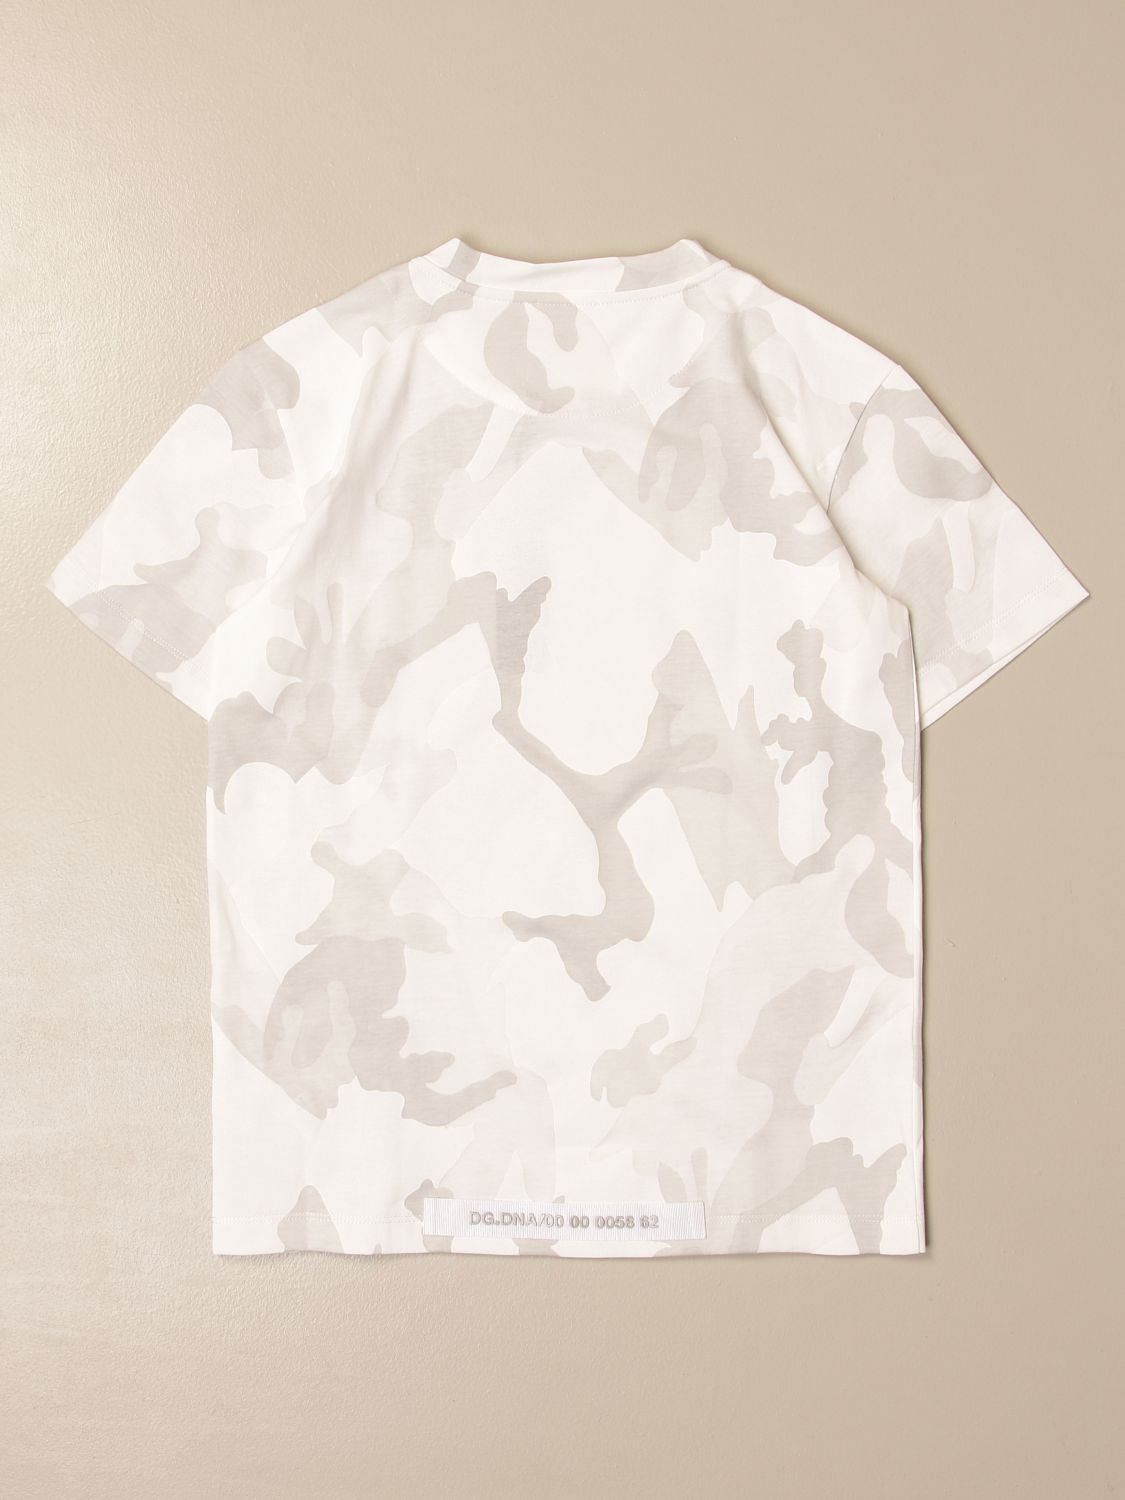 Dolce & Gabbana Camouflage T-shirt